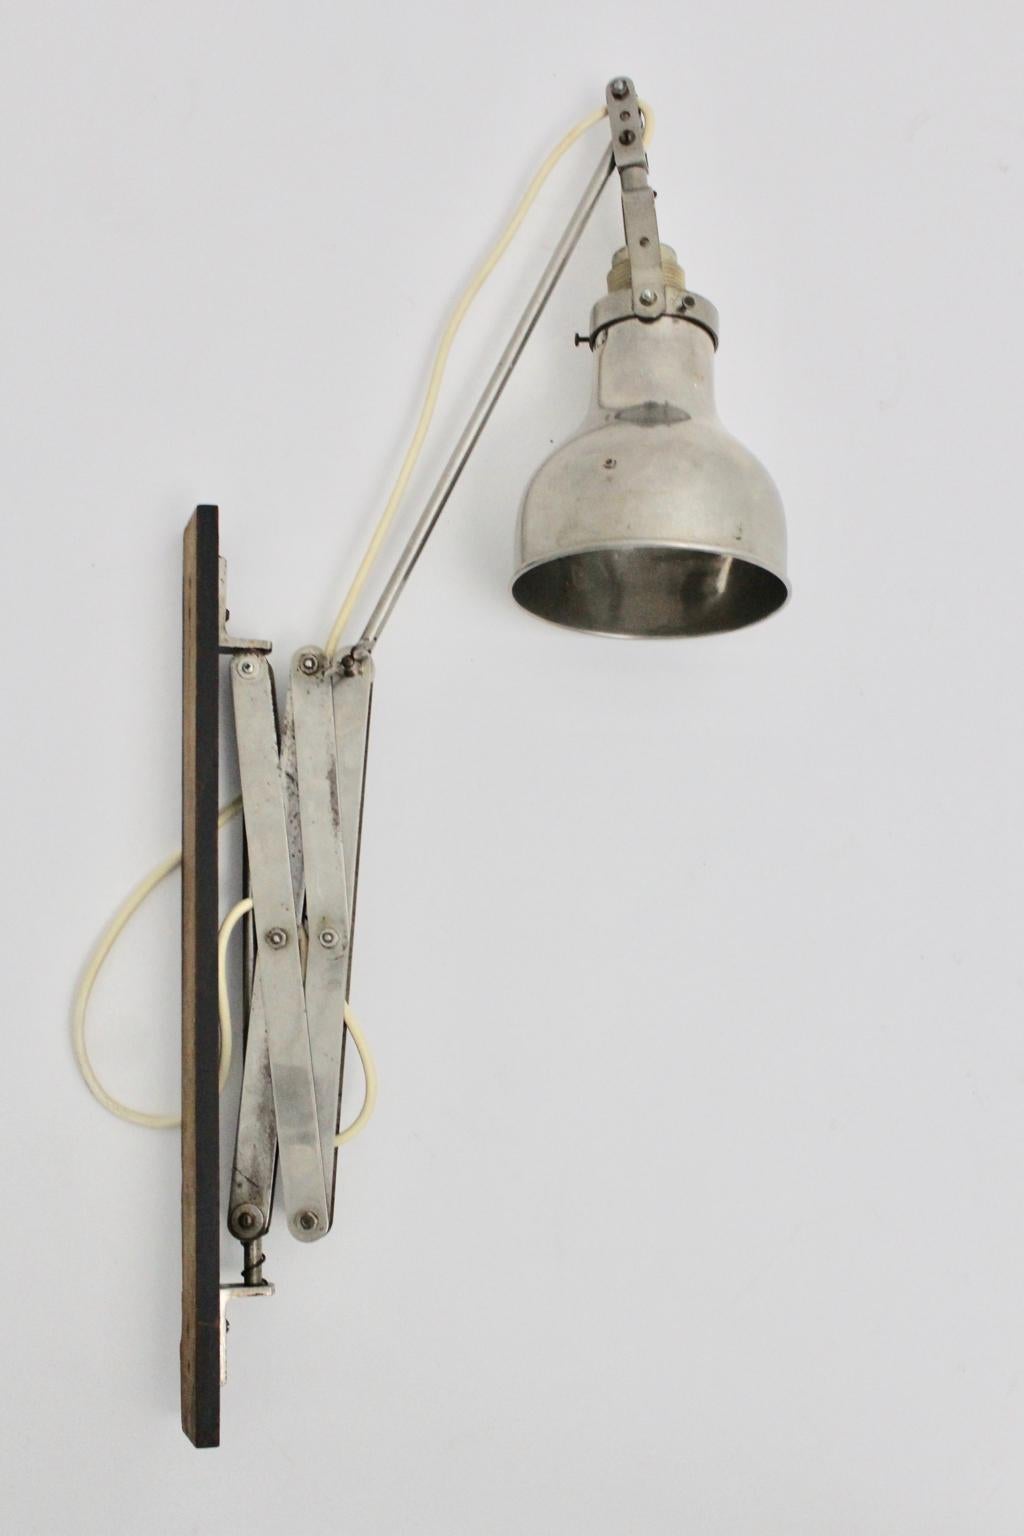 Cette magnifique lampe à ciseaux murale originale du Bauhaus comporte un support mural en bois de hêtre - laqué noir.
En outre, l'applique murale est en métal et en métal nickelé.
L'état est très bon avec des signes d'âge et d'utilisation et montre